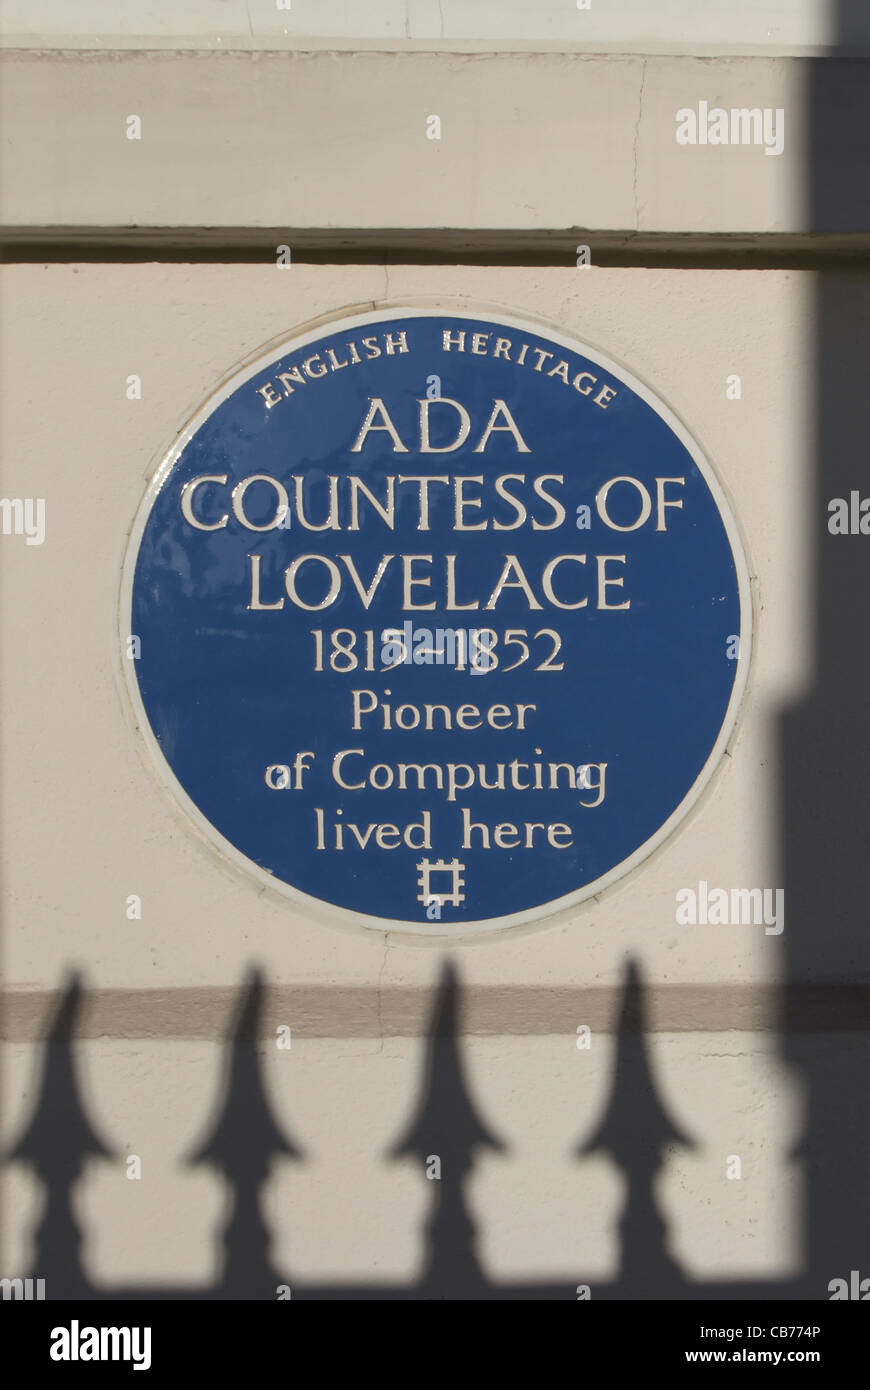 Targa blu contrassegno di una casa del XIX secolo computer pioneer ada contessa di lovelace, St James's Square, Londra, Inghilterra Foto Stock